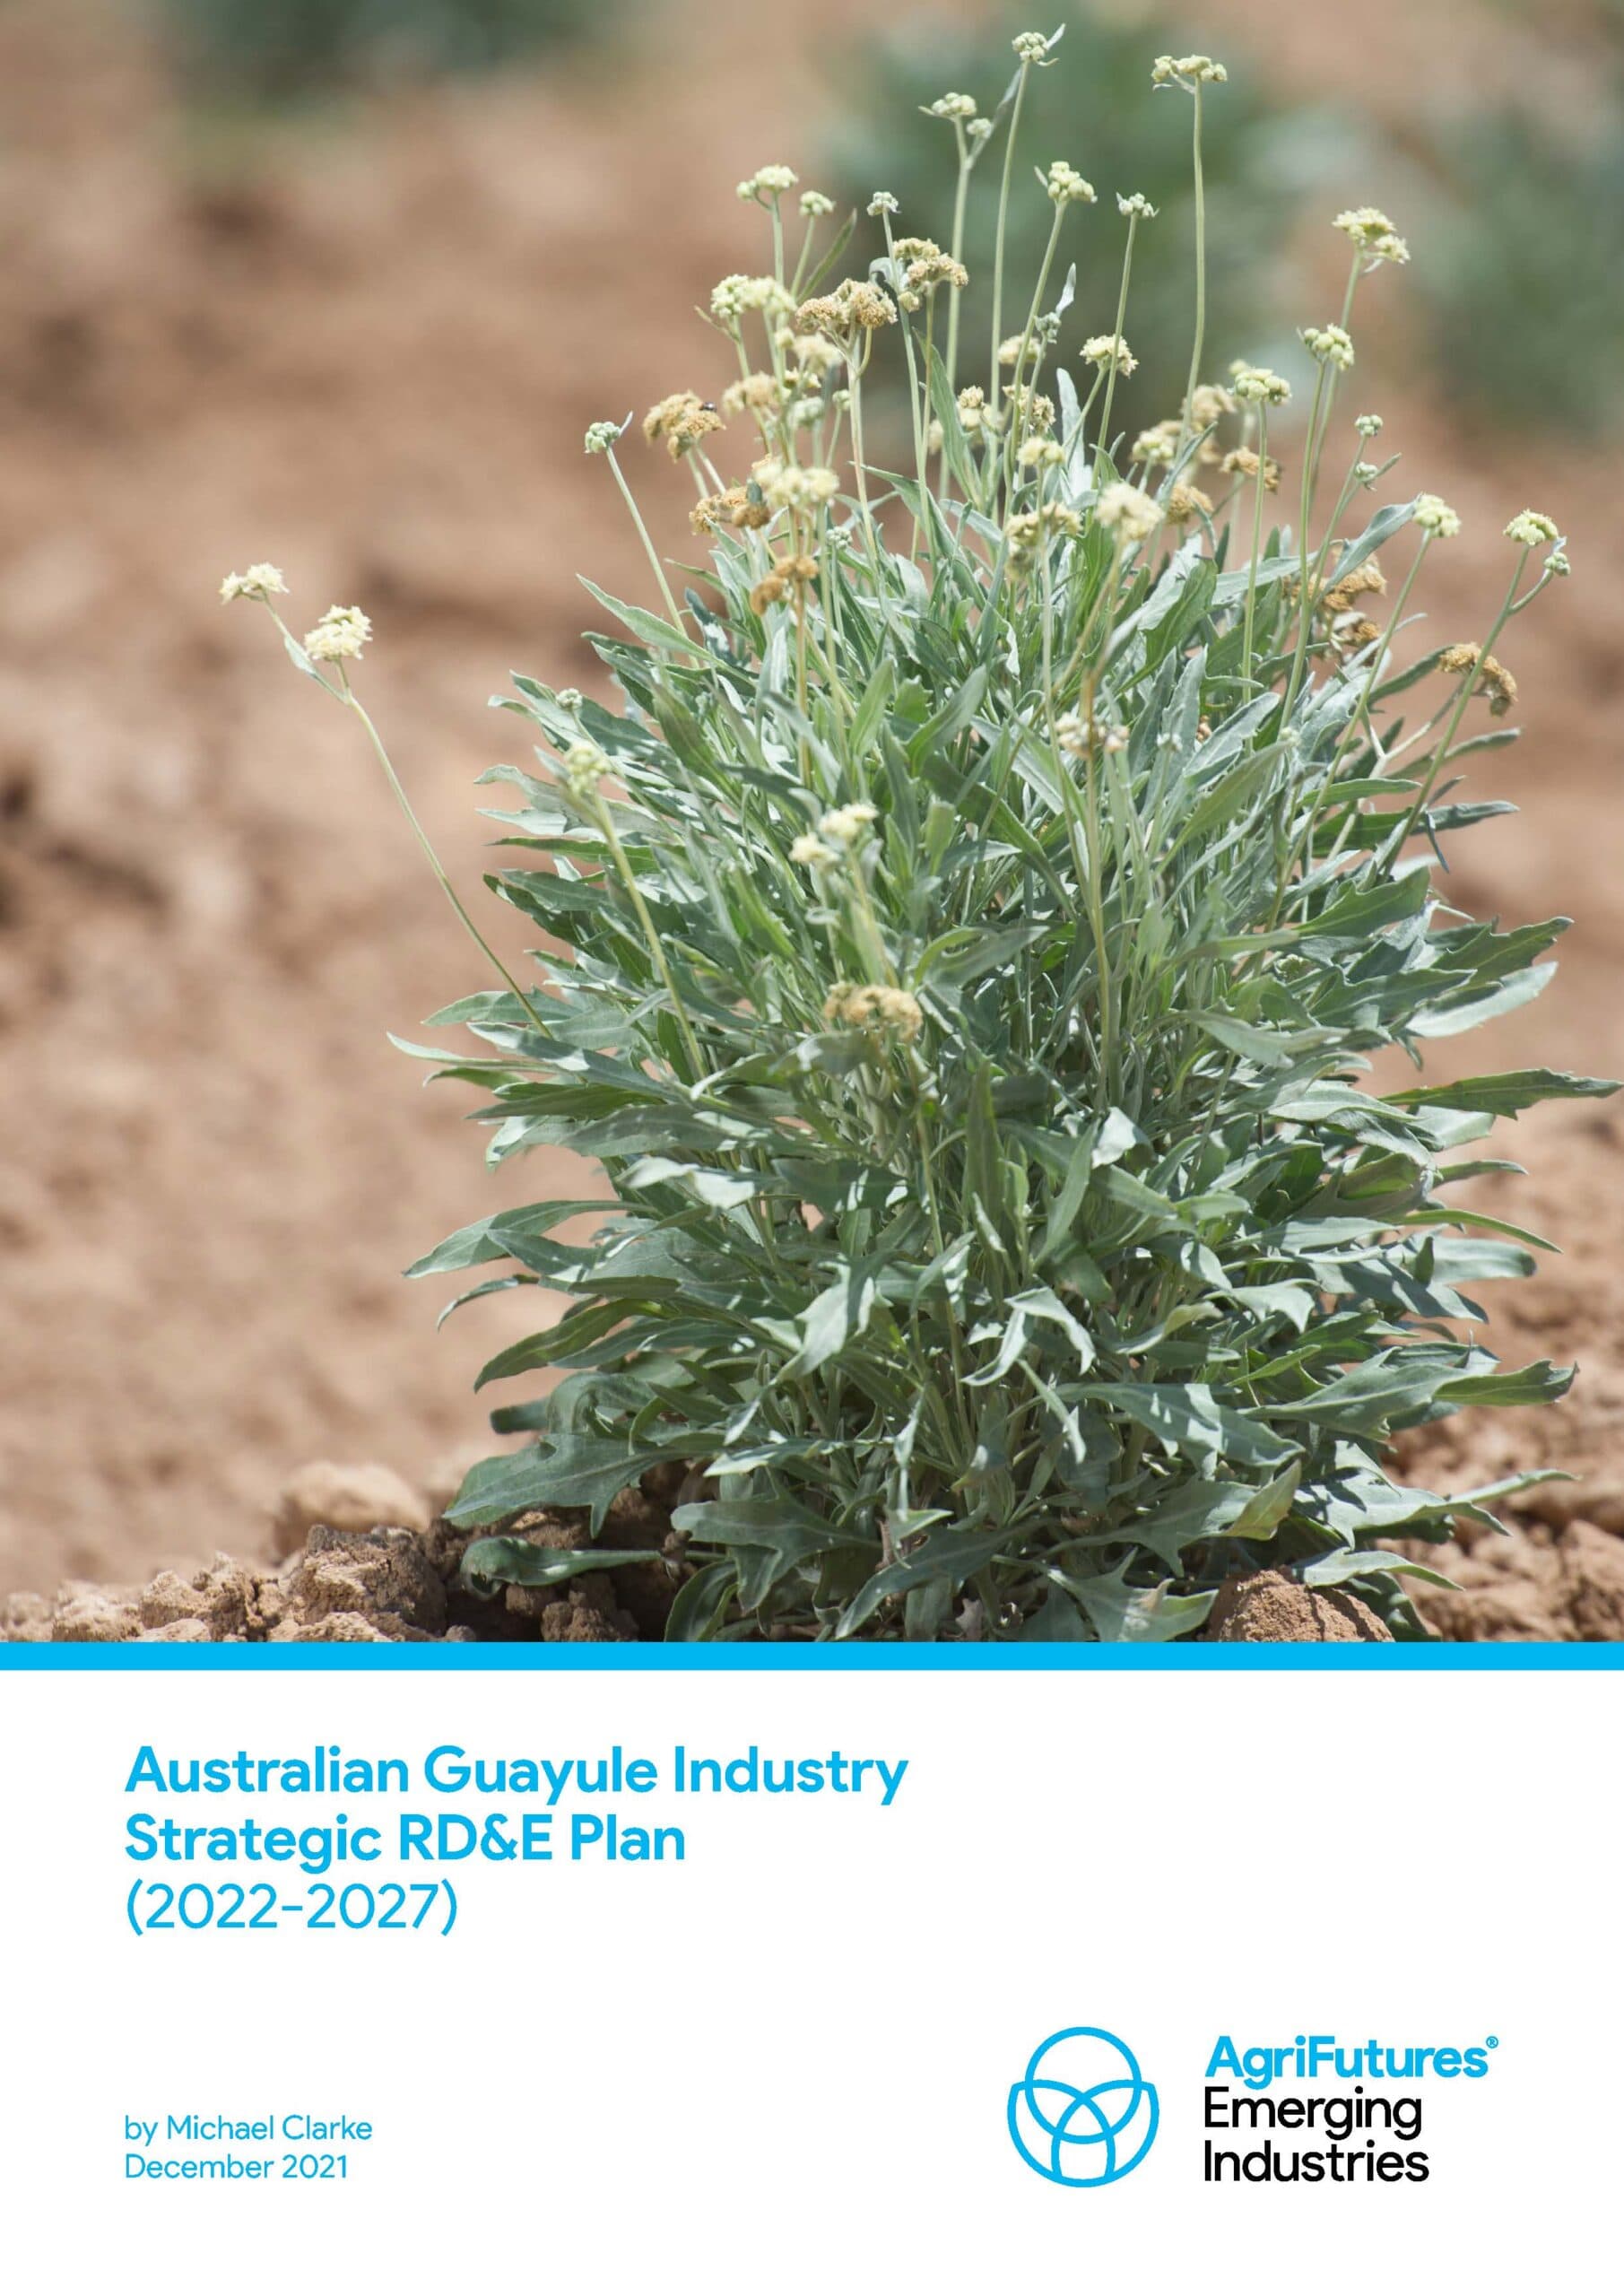 Australian Guayule Industry Strategic RD&E Plan - image